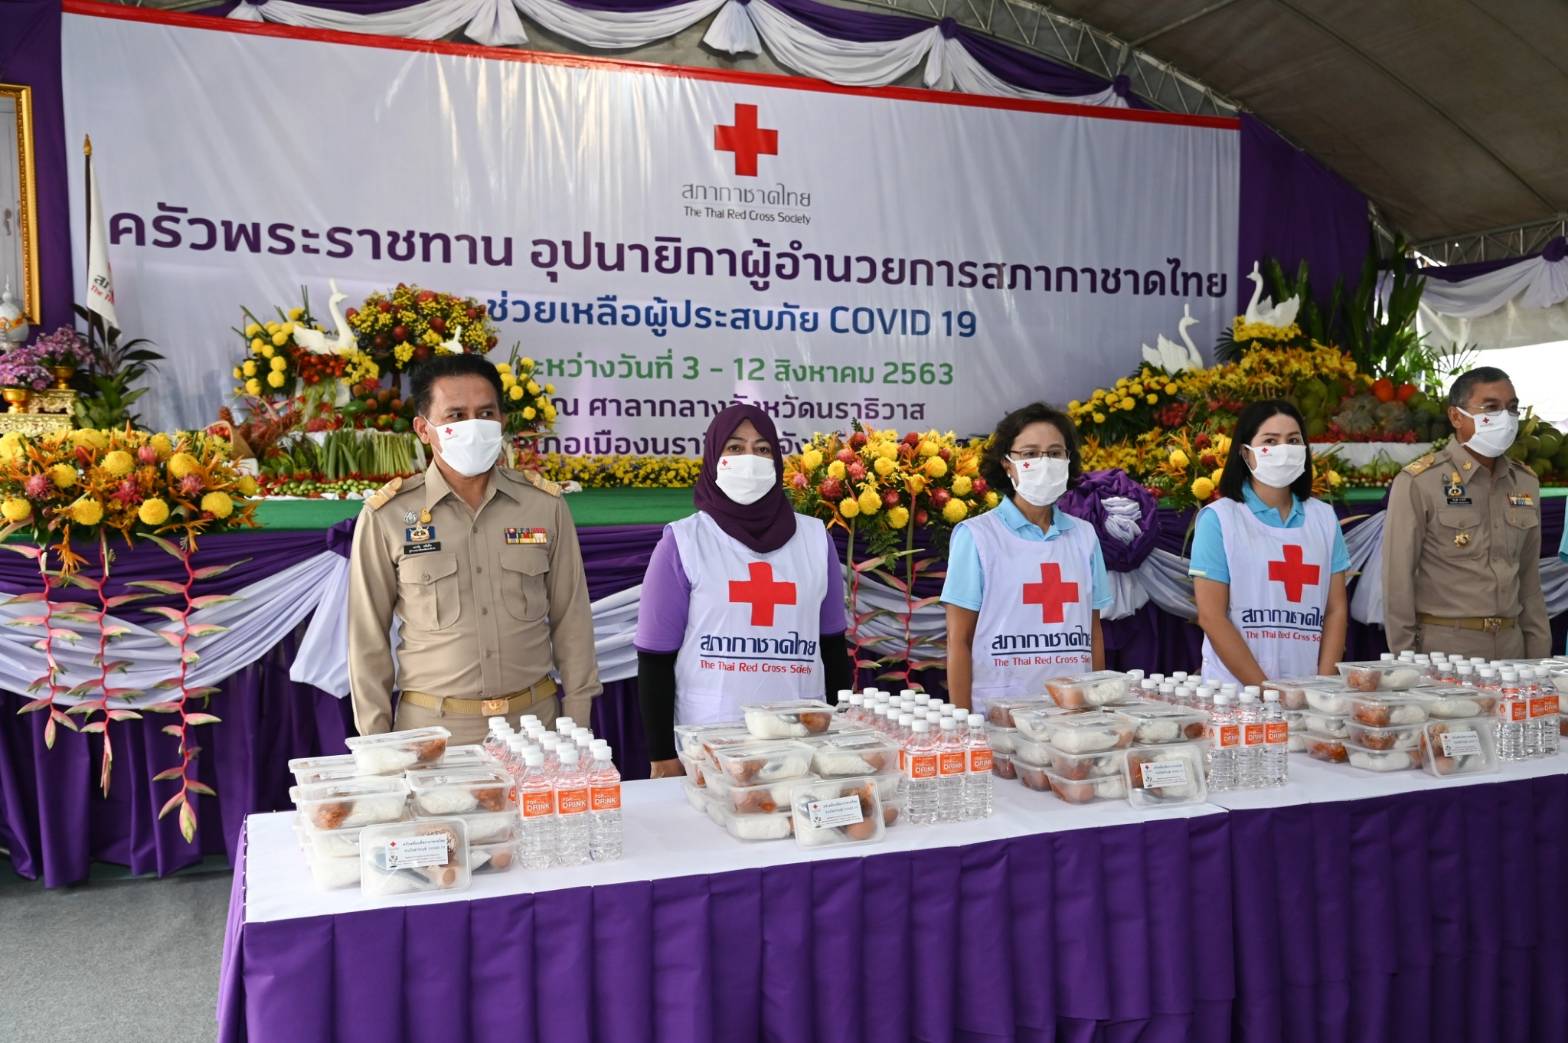 ครัวพระราชทาน อุปนายิกาผู้อำนวยการสภากาชาดไทย” จังหวัดนราธิวาส วันที่ 6 สิงหาคม 2563